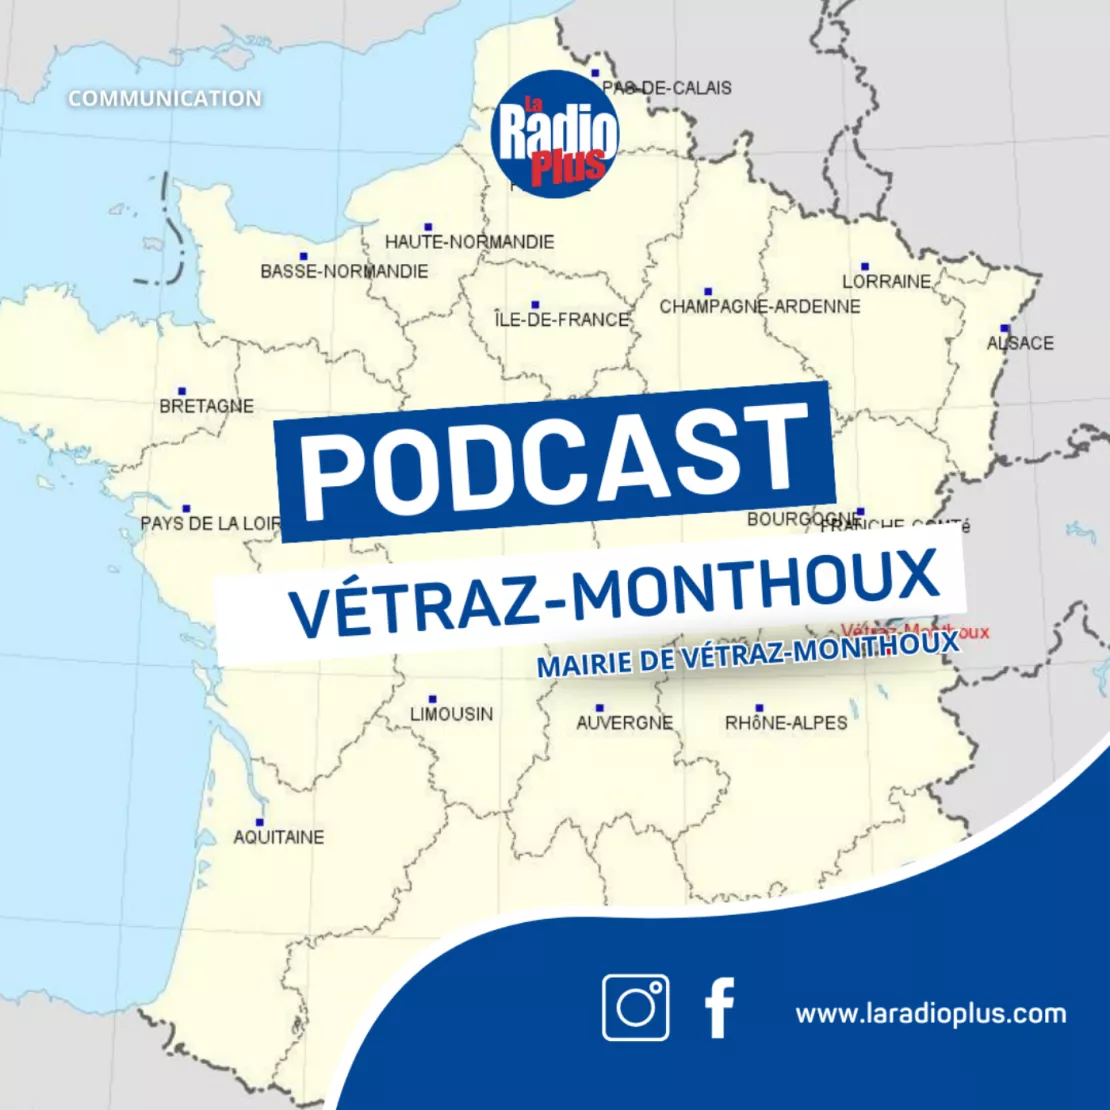 Bienvenue dans le podcast de la mairie de Vétraz-Monthoux !